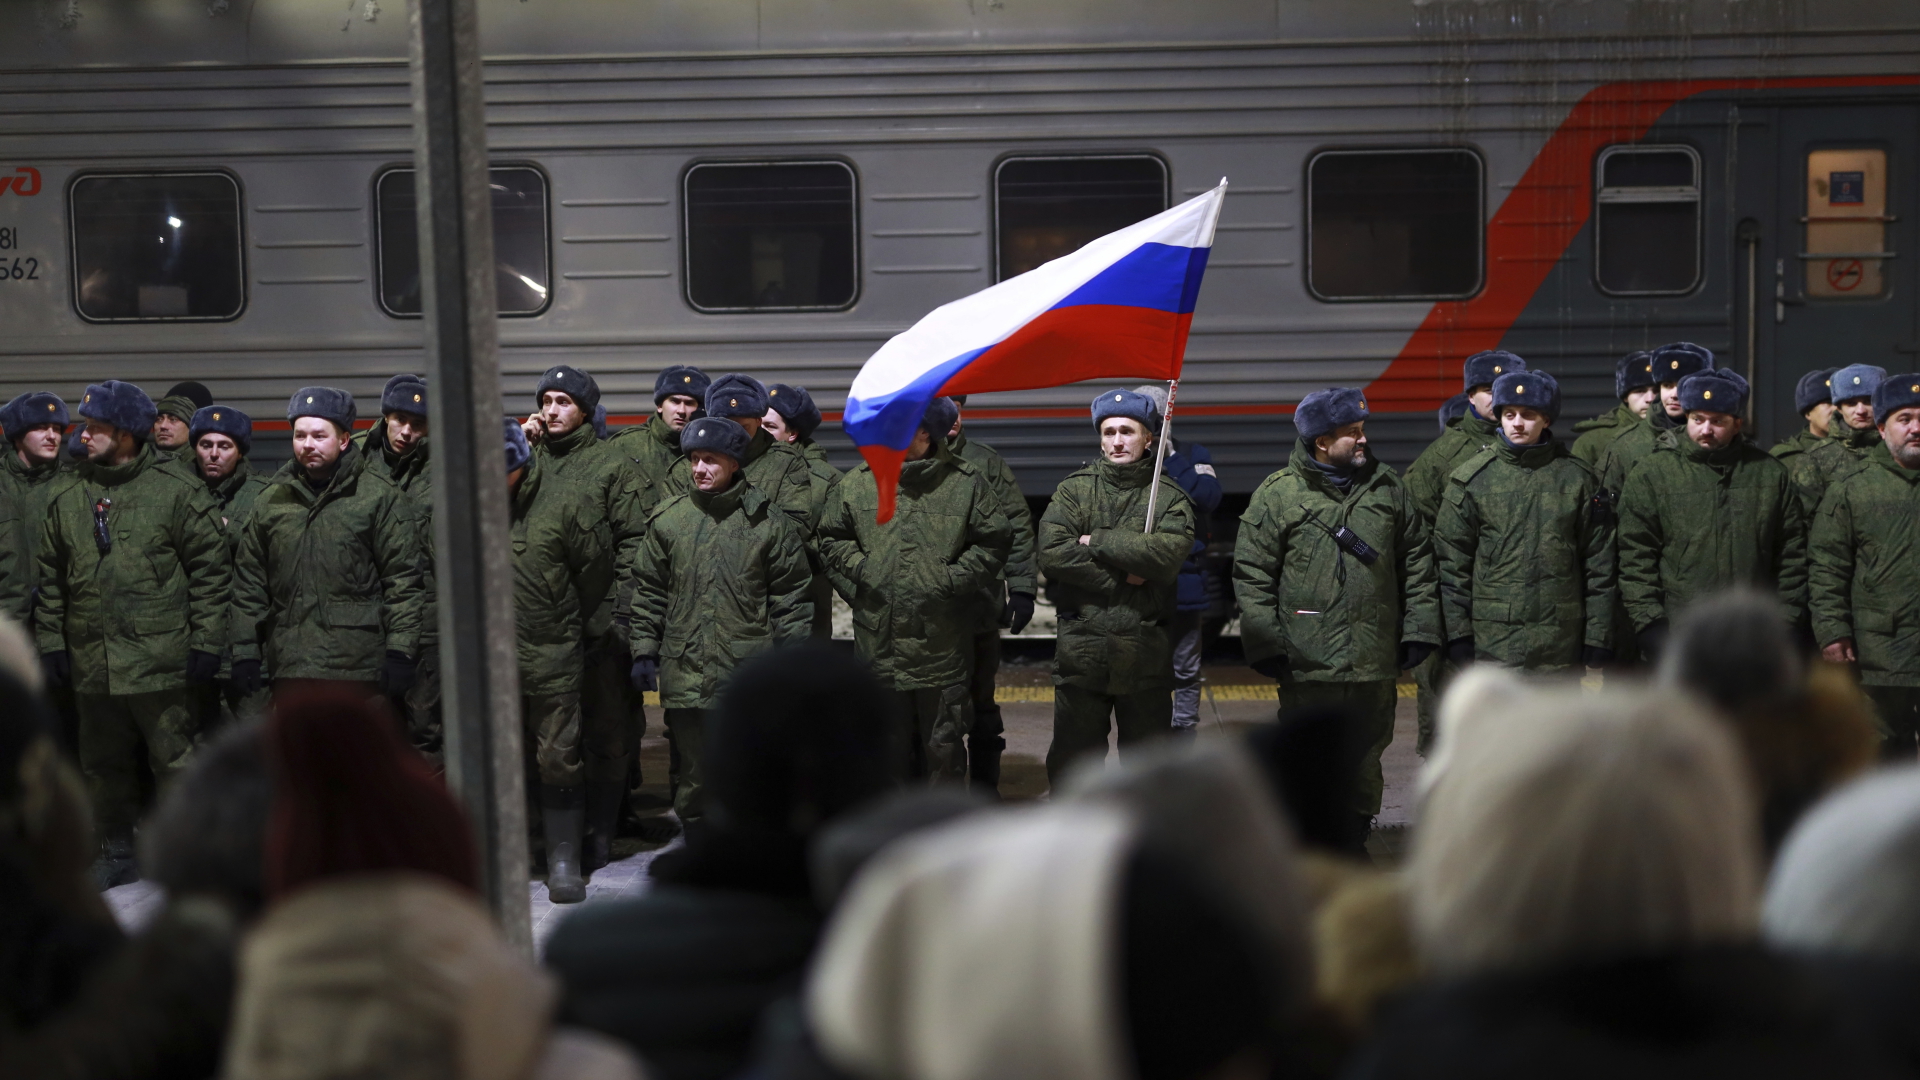 Soldaten, die kürzlich von Russland mobilisiert wurden, stehen bei einer Zeremonie vor dem Einsteigen in einen Zug auf einem Bahnhof. | dpa